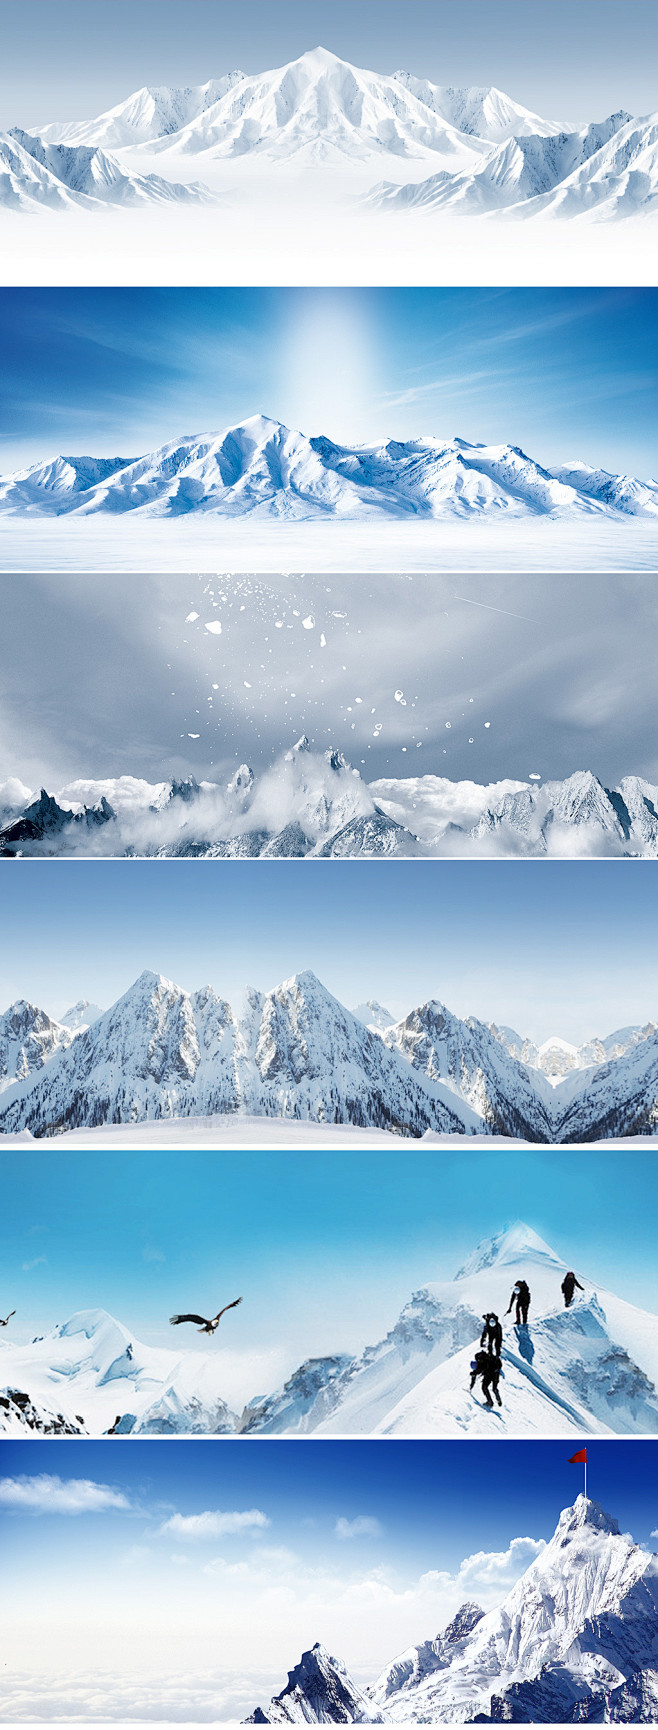 唯美冬季白色雪景雪山山脉自然风景海报ba...